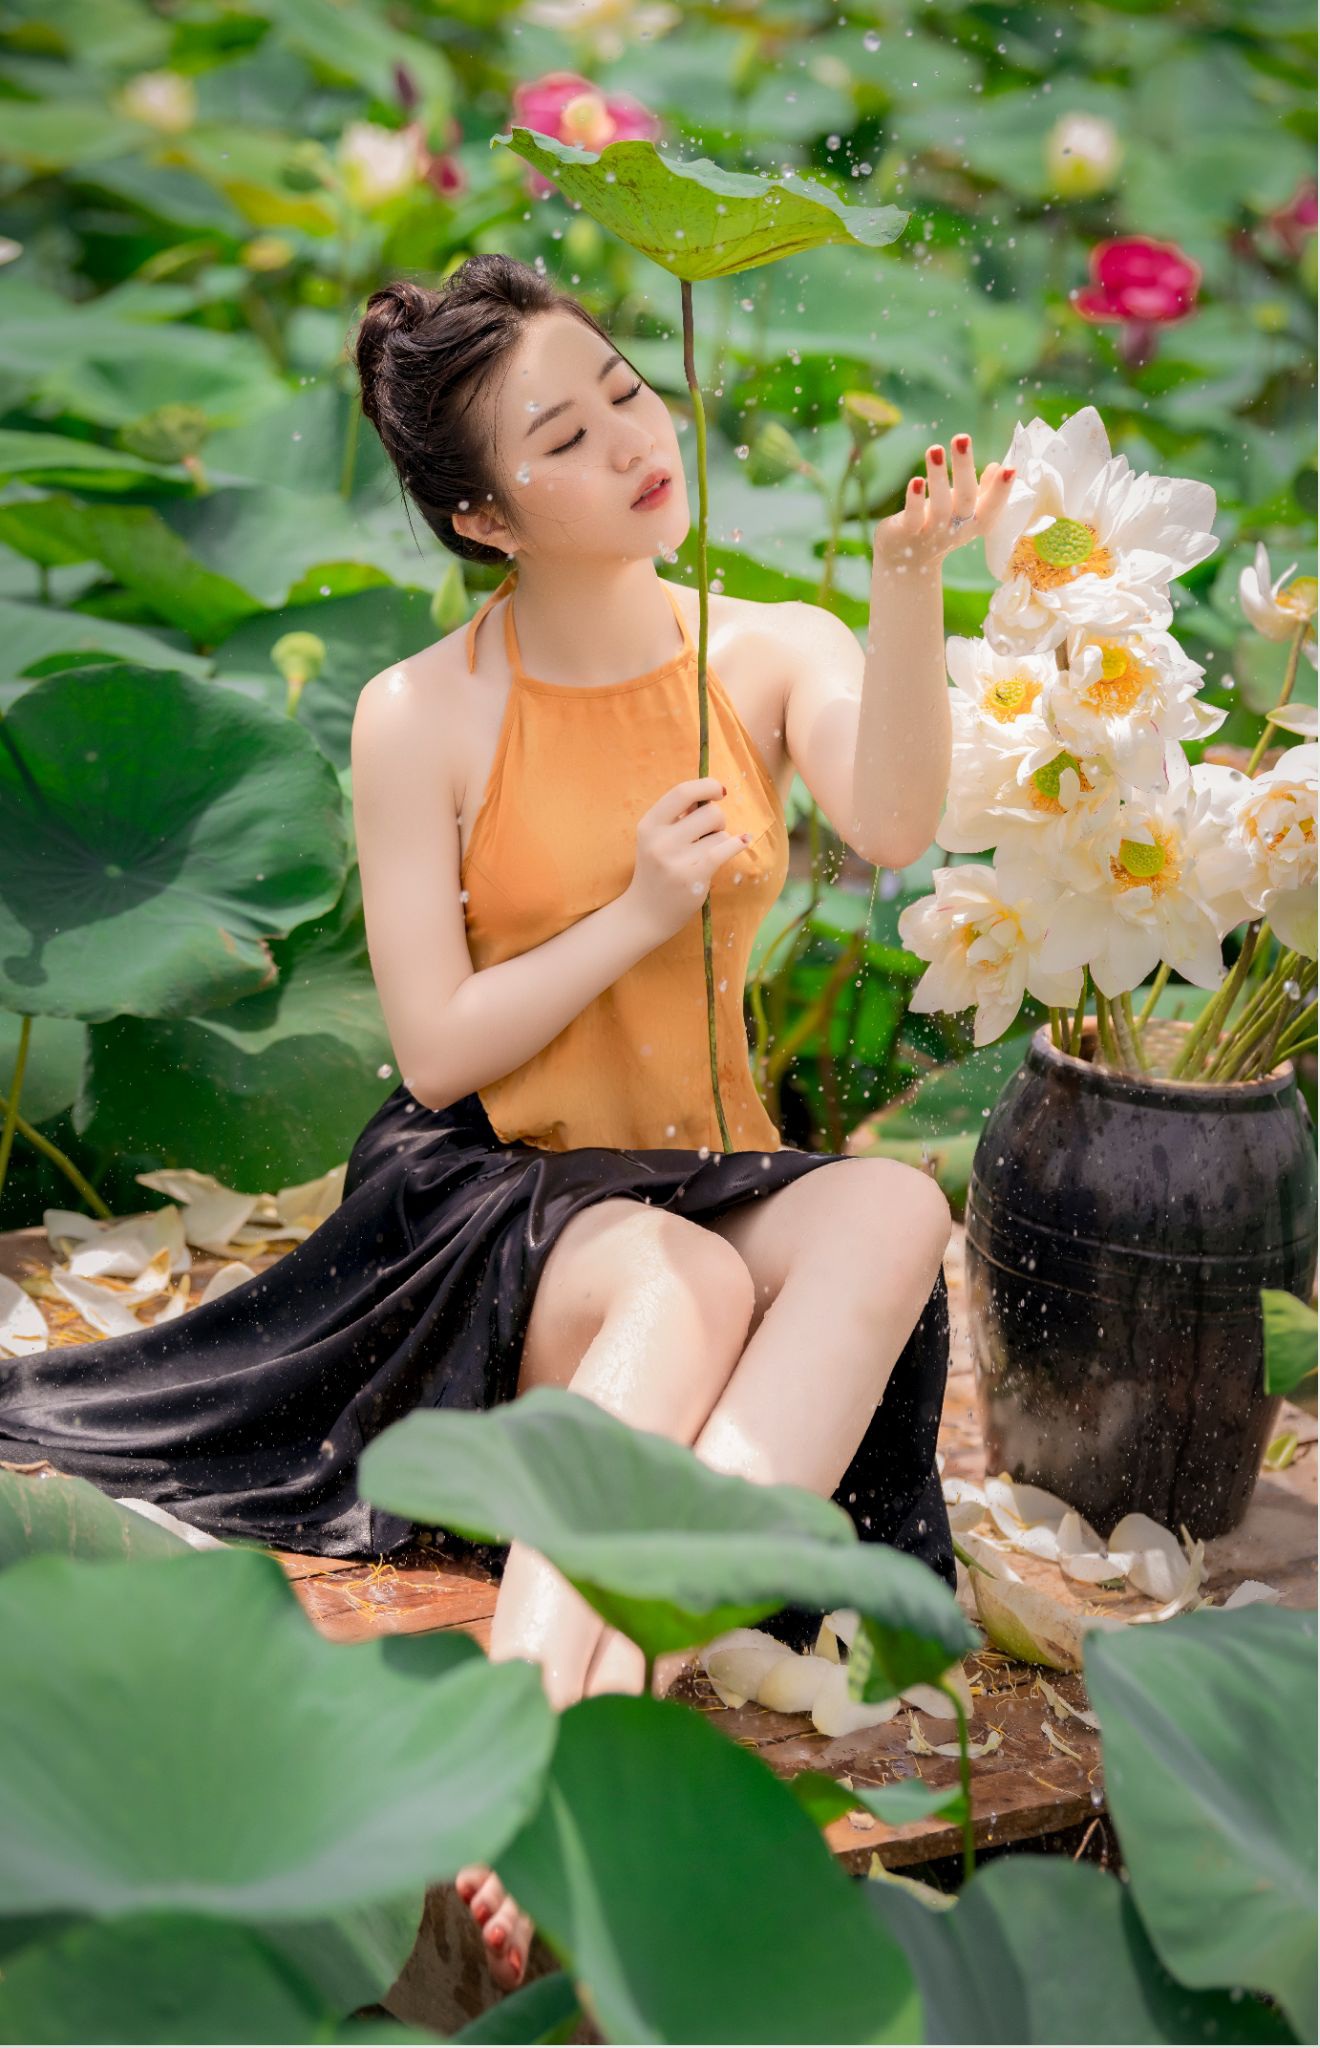 Áo yếm: Áo yếm là trang phục truyền thống của Việt Nam, với kiểu dáng thanh lịch, duyên dáng nhưng vô cùng nữ tính. Hình ảnh những thiếu nữ diện áo yếm cùng với hoa sen tạo nên một bức tranh tuyệt đẹp, khiến người xem cảm thấy trầm lắng và lãng mạn.